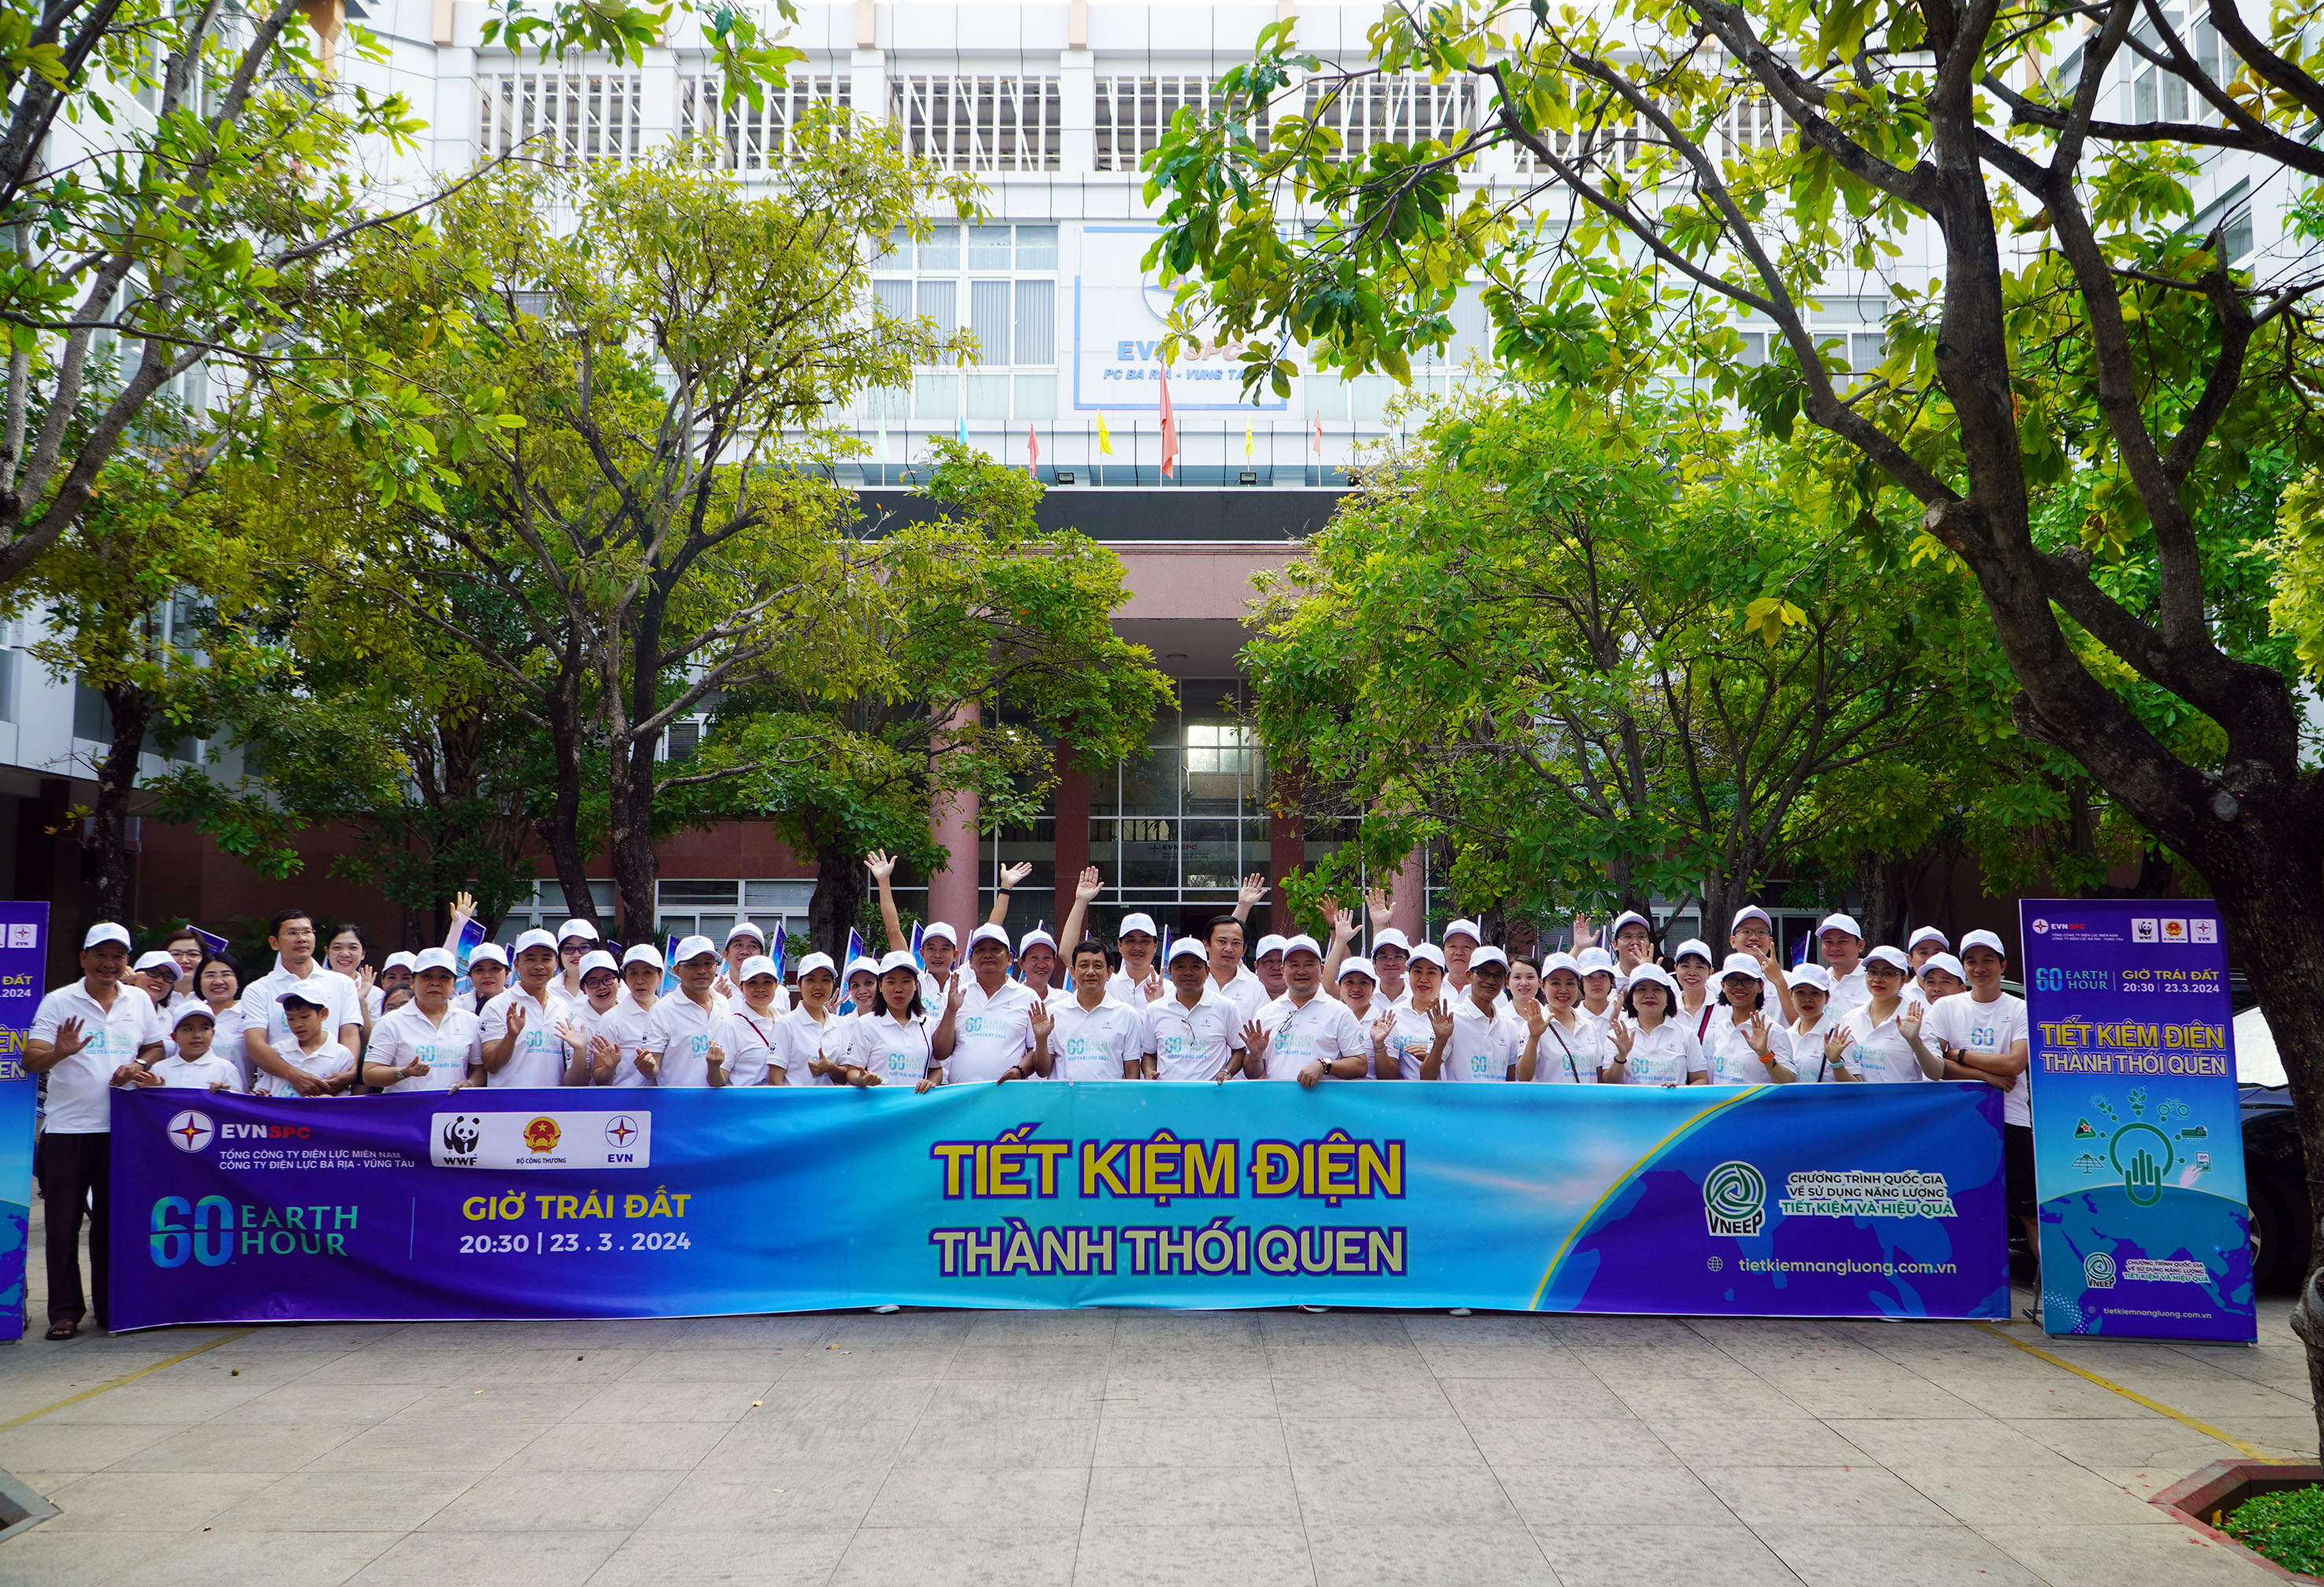 Sự kiện diễu hành có sự tham gia của hơn 100 cán bộ, nhân viên, người lao động Công ty Điện lực Bà Rịa-Vũng Tàu.